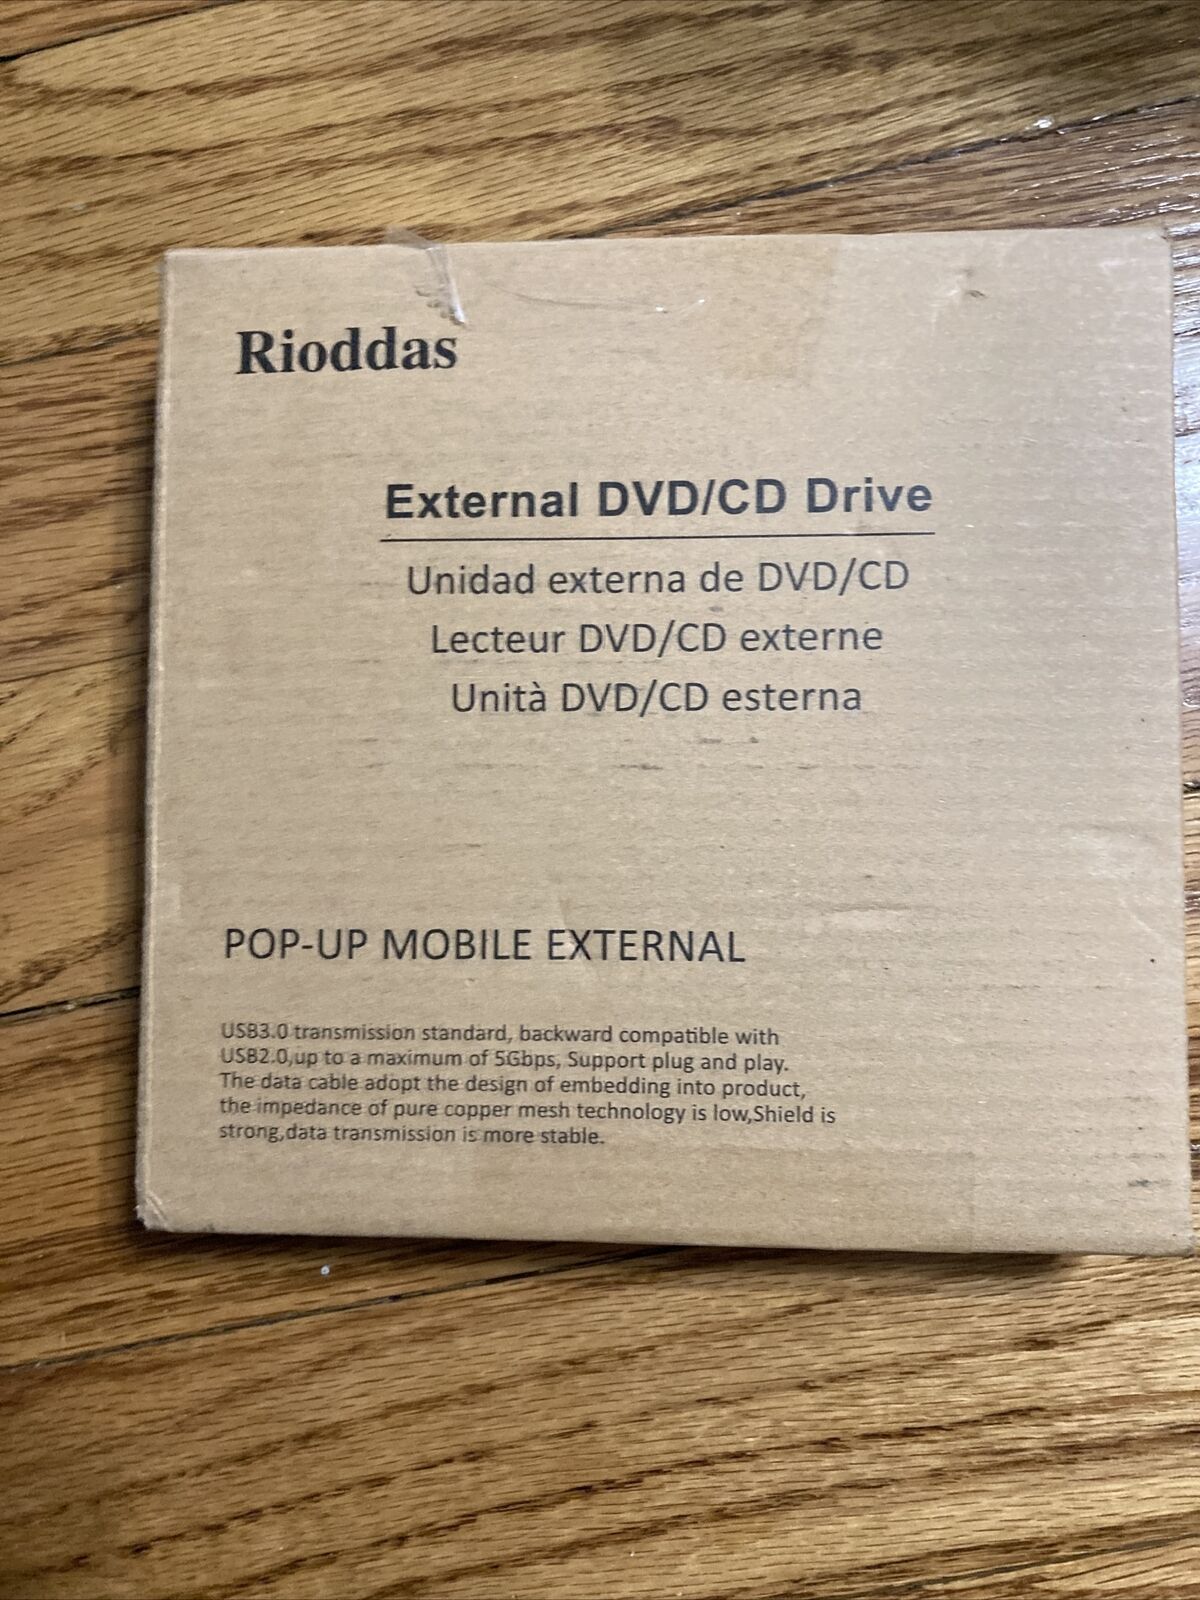 Rioddas External DVD/CD Drive Model BT638 - USB3.0 Pop-up Mobile External